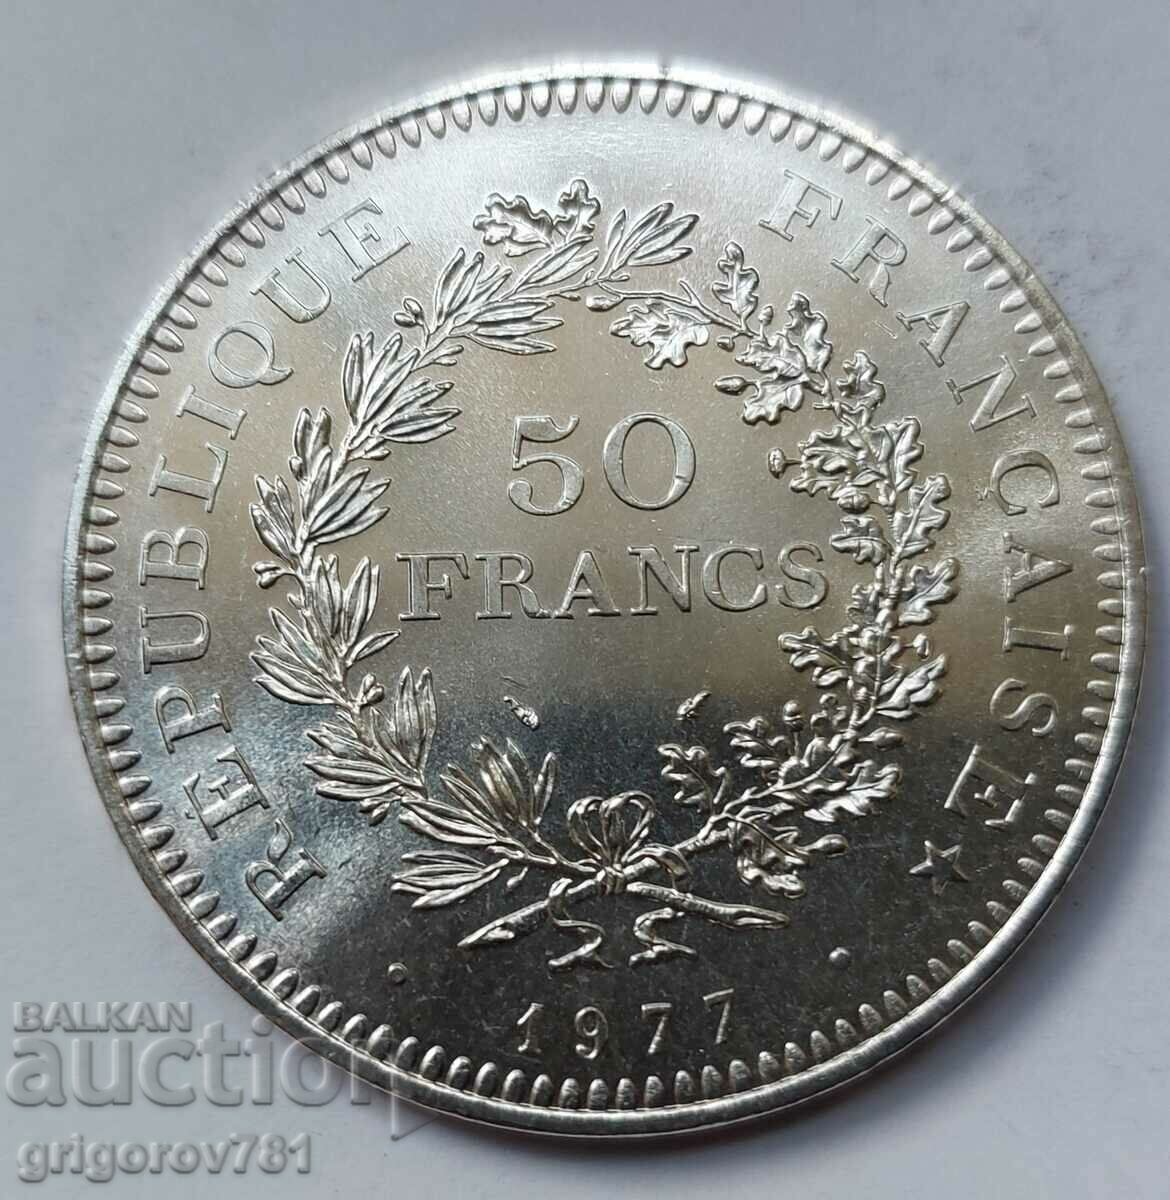 50 Franci Argint Franta 1977 - Moneda de argint #45